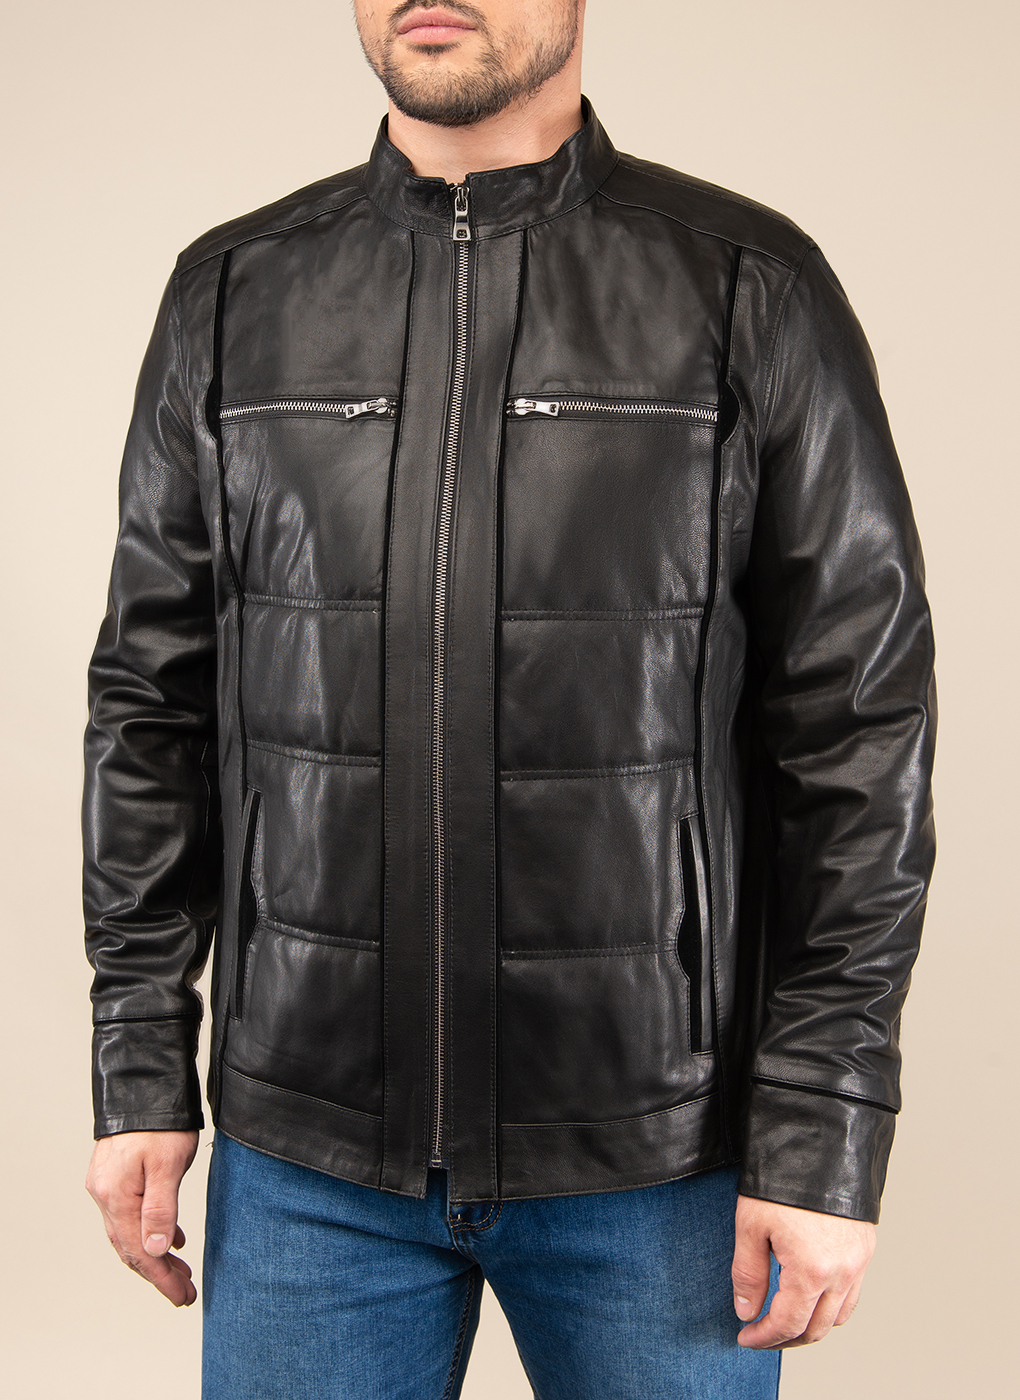 Кожаная куртка мужская Каляев 49637 черная 44 RU